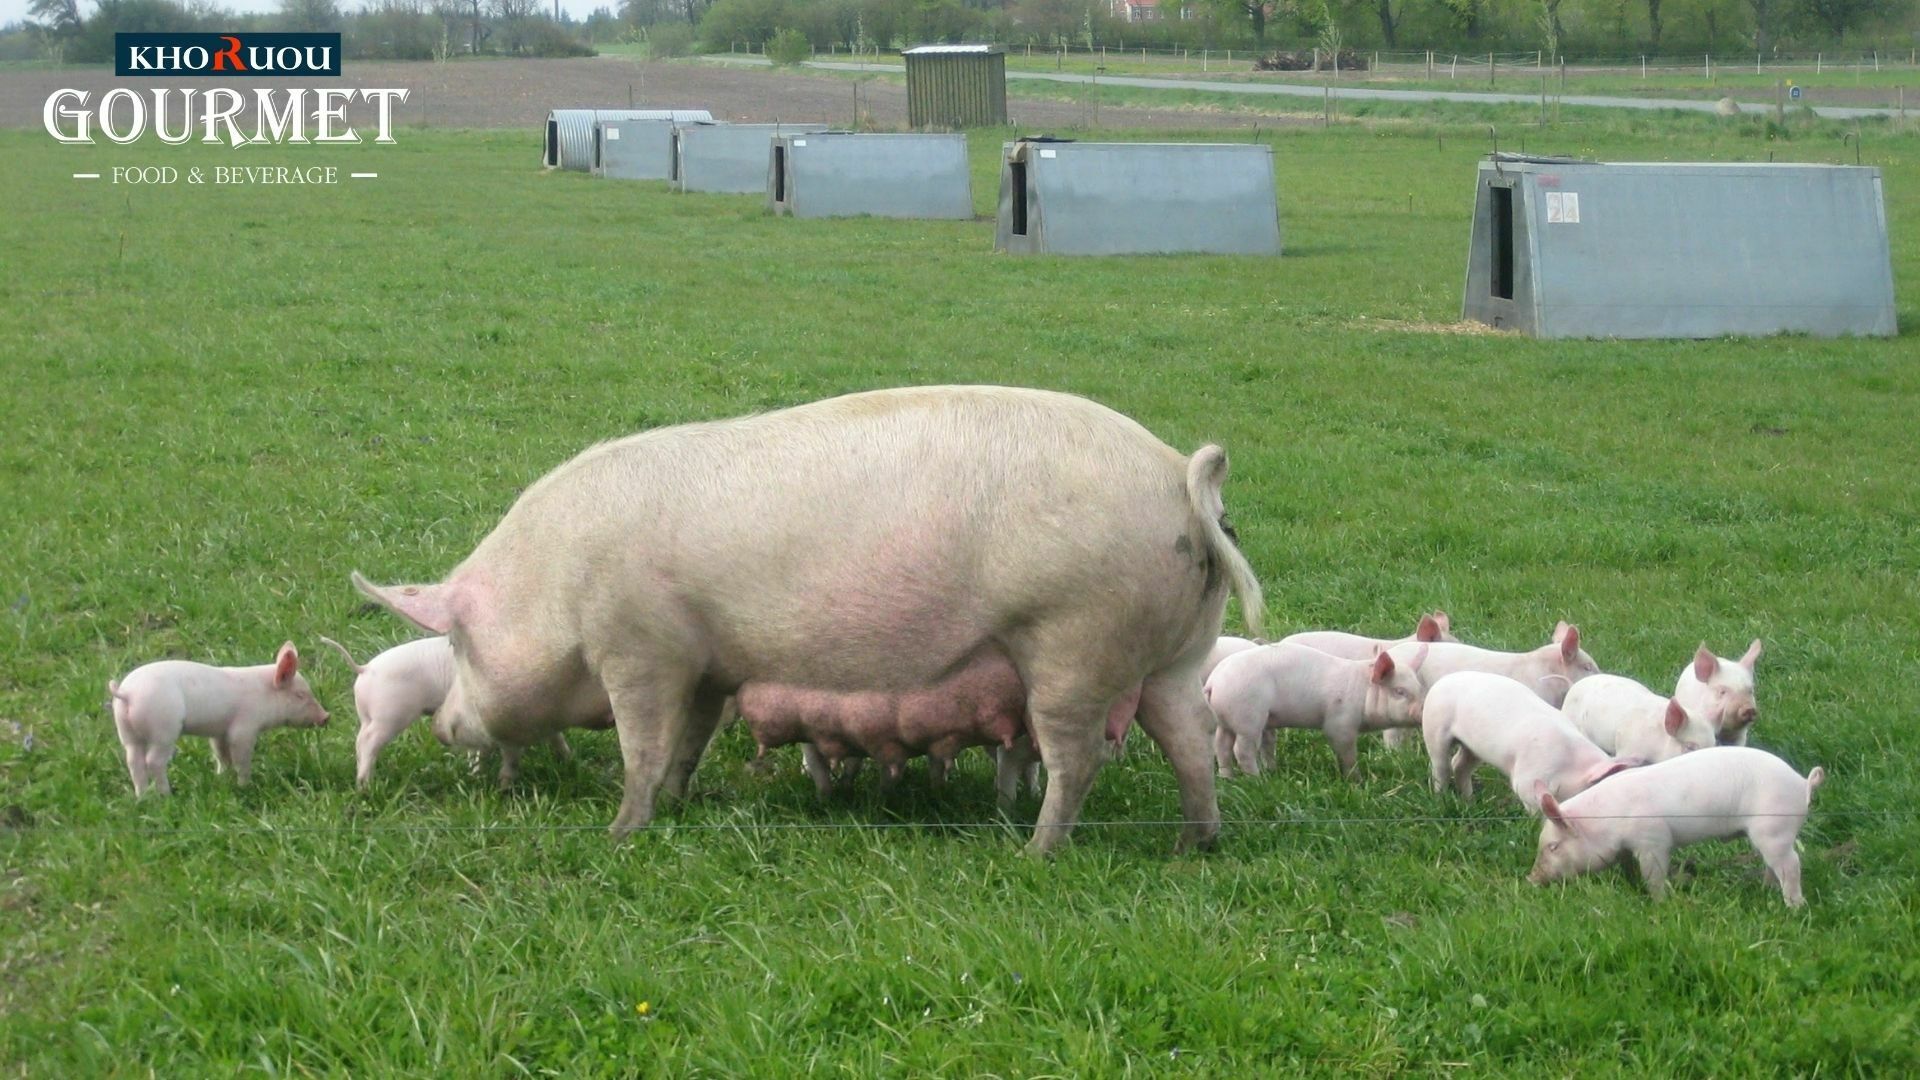 Những chú lợn organic được chăn nuôi trong các nhà riêng biệt, có hỗ trợ quạt gió công suất cao. Được nằm trên nền nệm, sở hữu khả năng xử lý vi sinh vật hiện đại, sạch sẽ 100%.